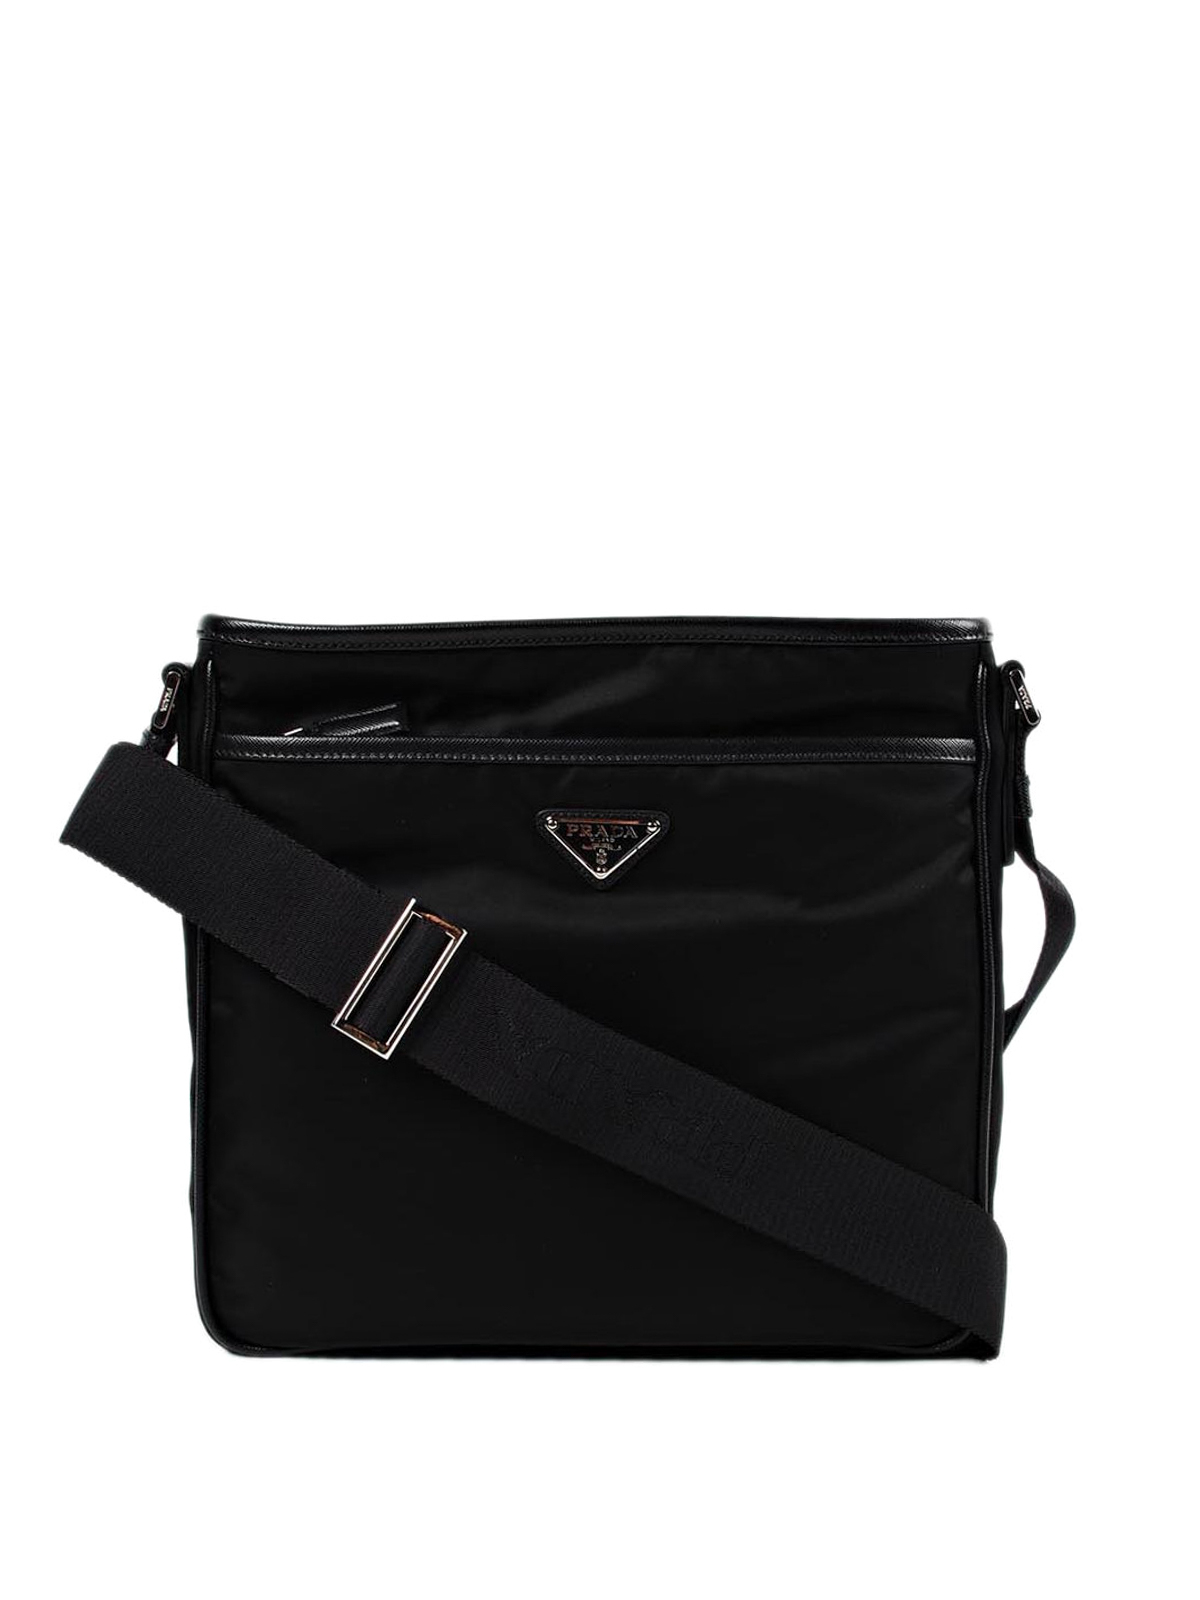 Shoulder bags Prada - Saffiano and nylon messenger bag - 2VH797064002